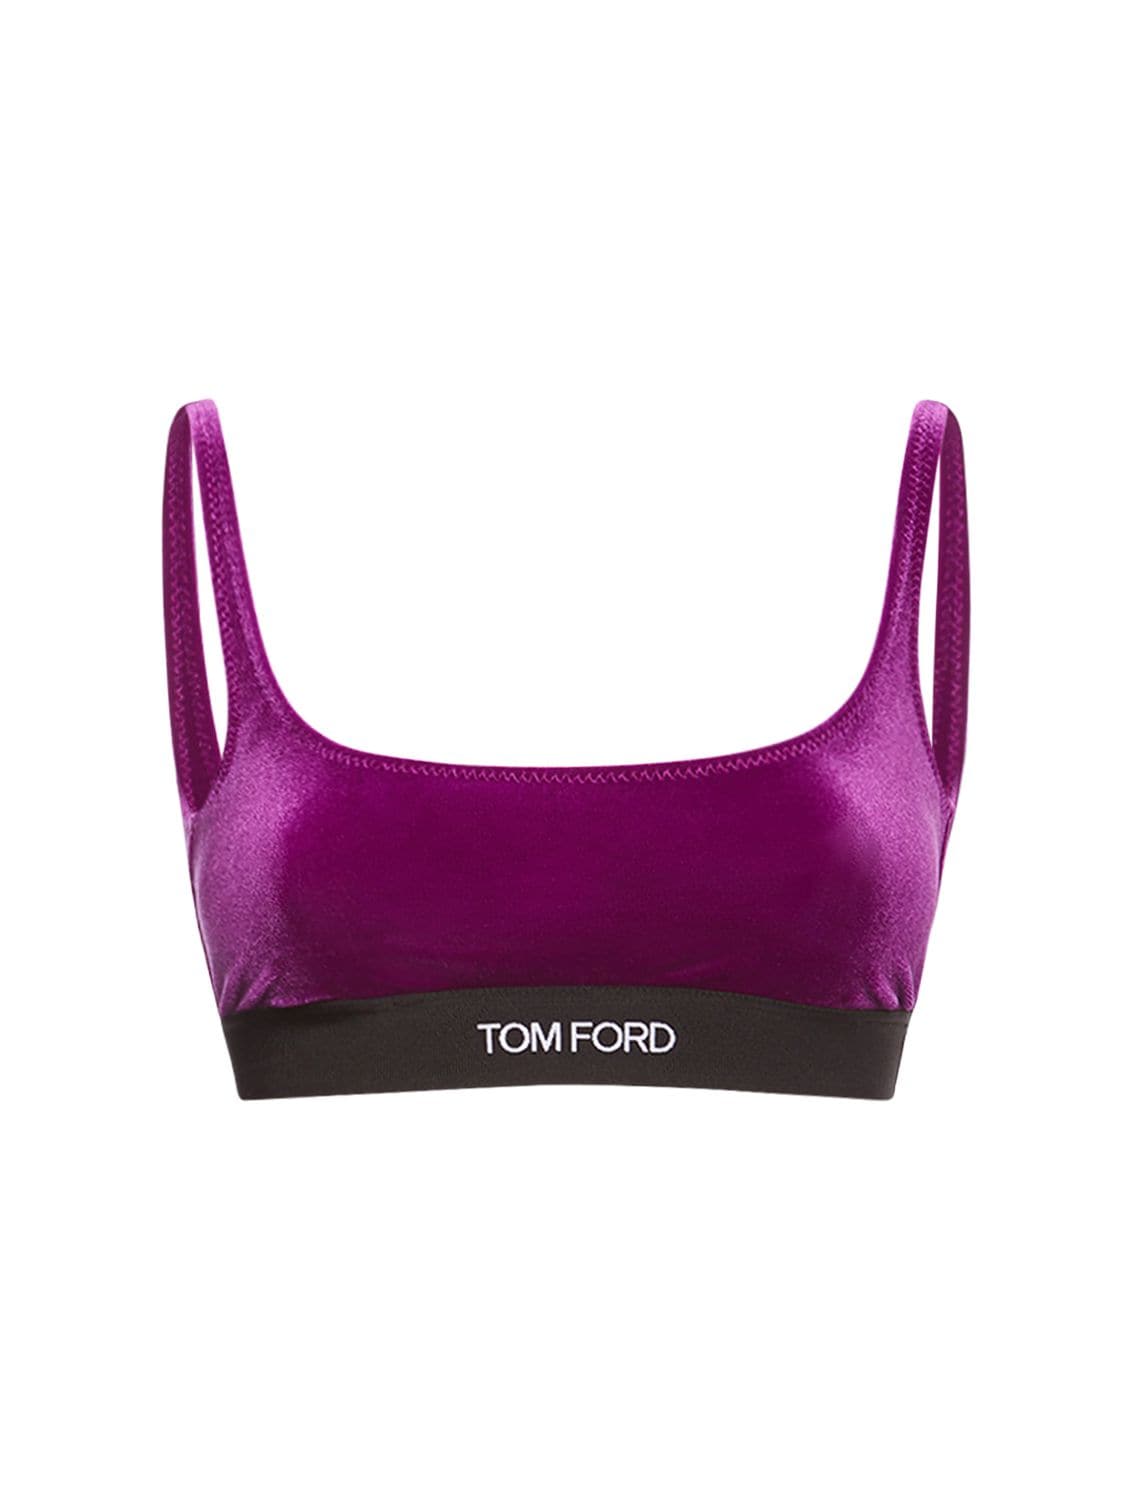 Tom Ford – Logo Bralette Top